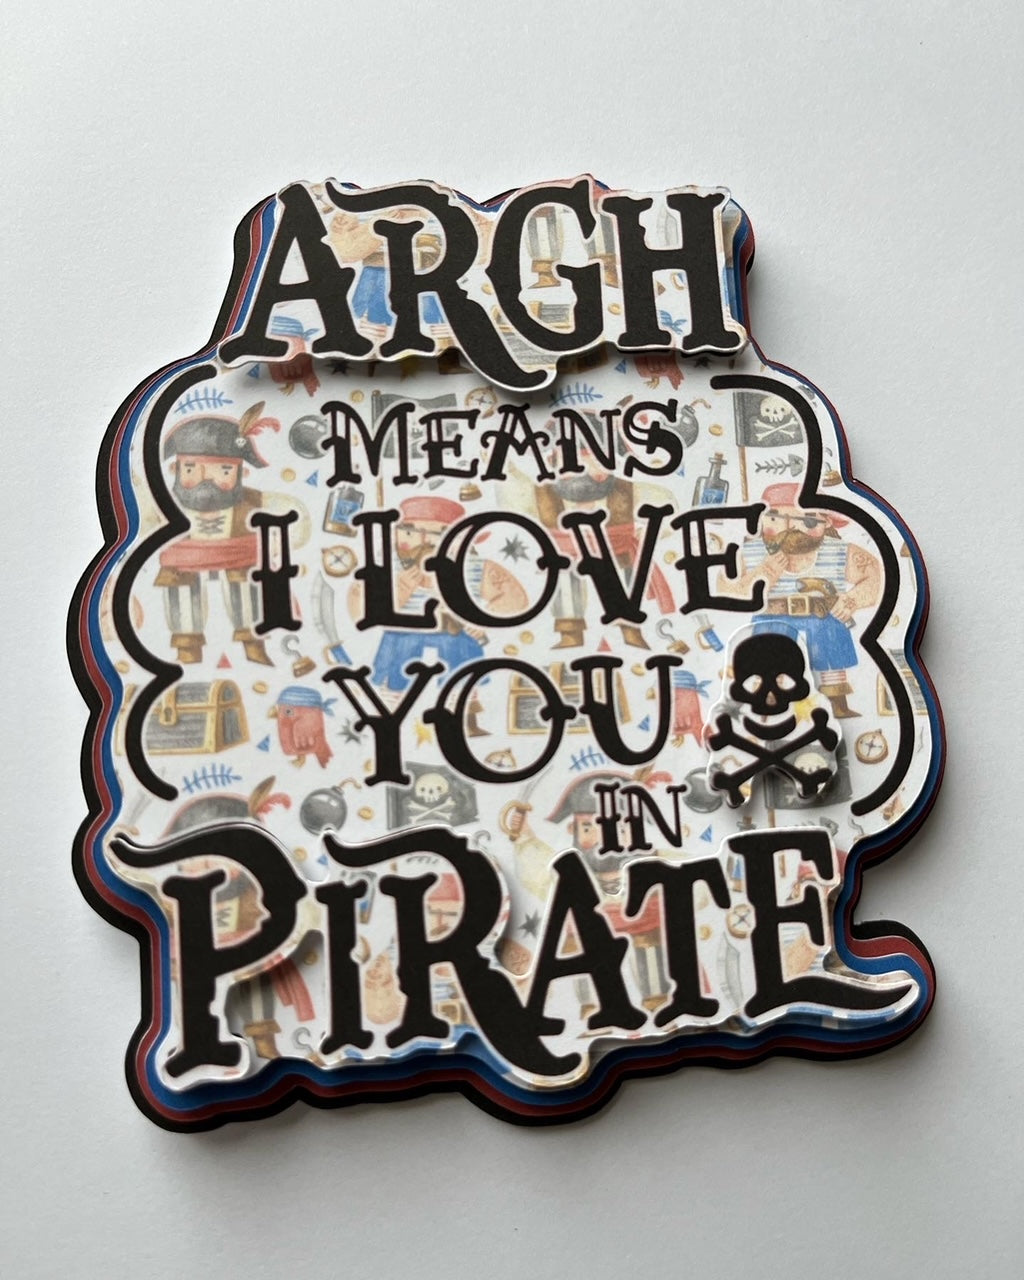 Argh Means I Love You In Pirate Die Cut